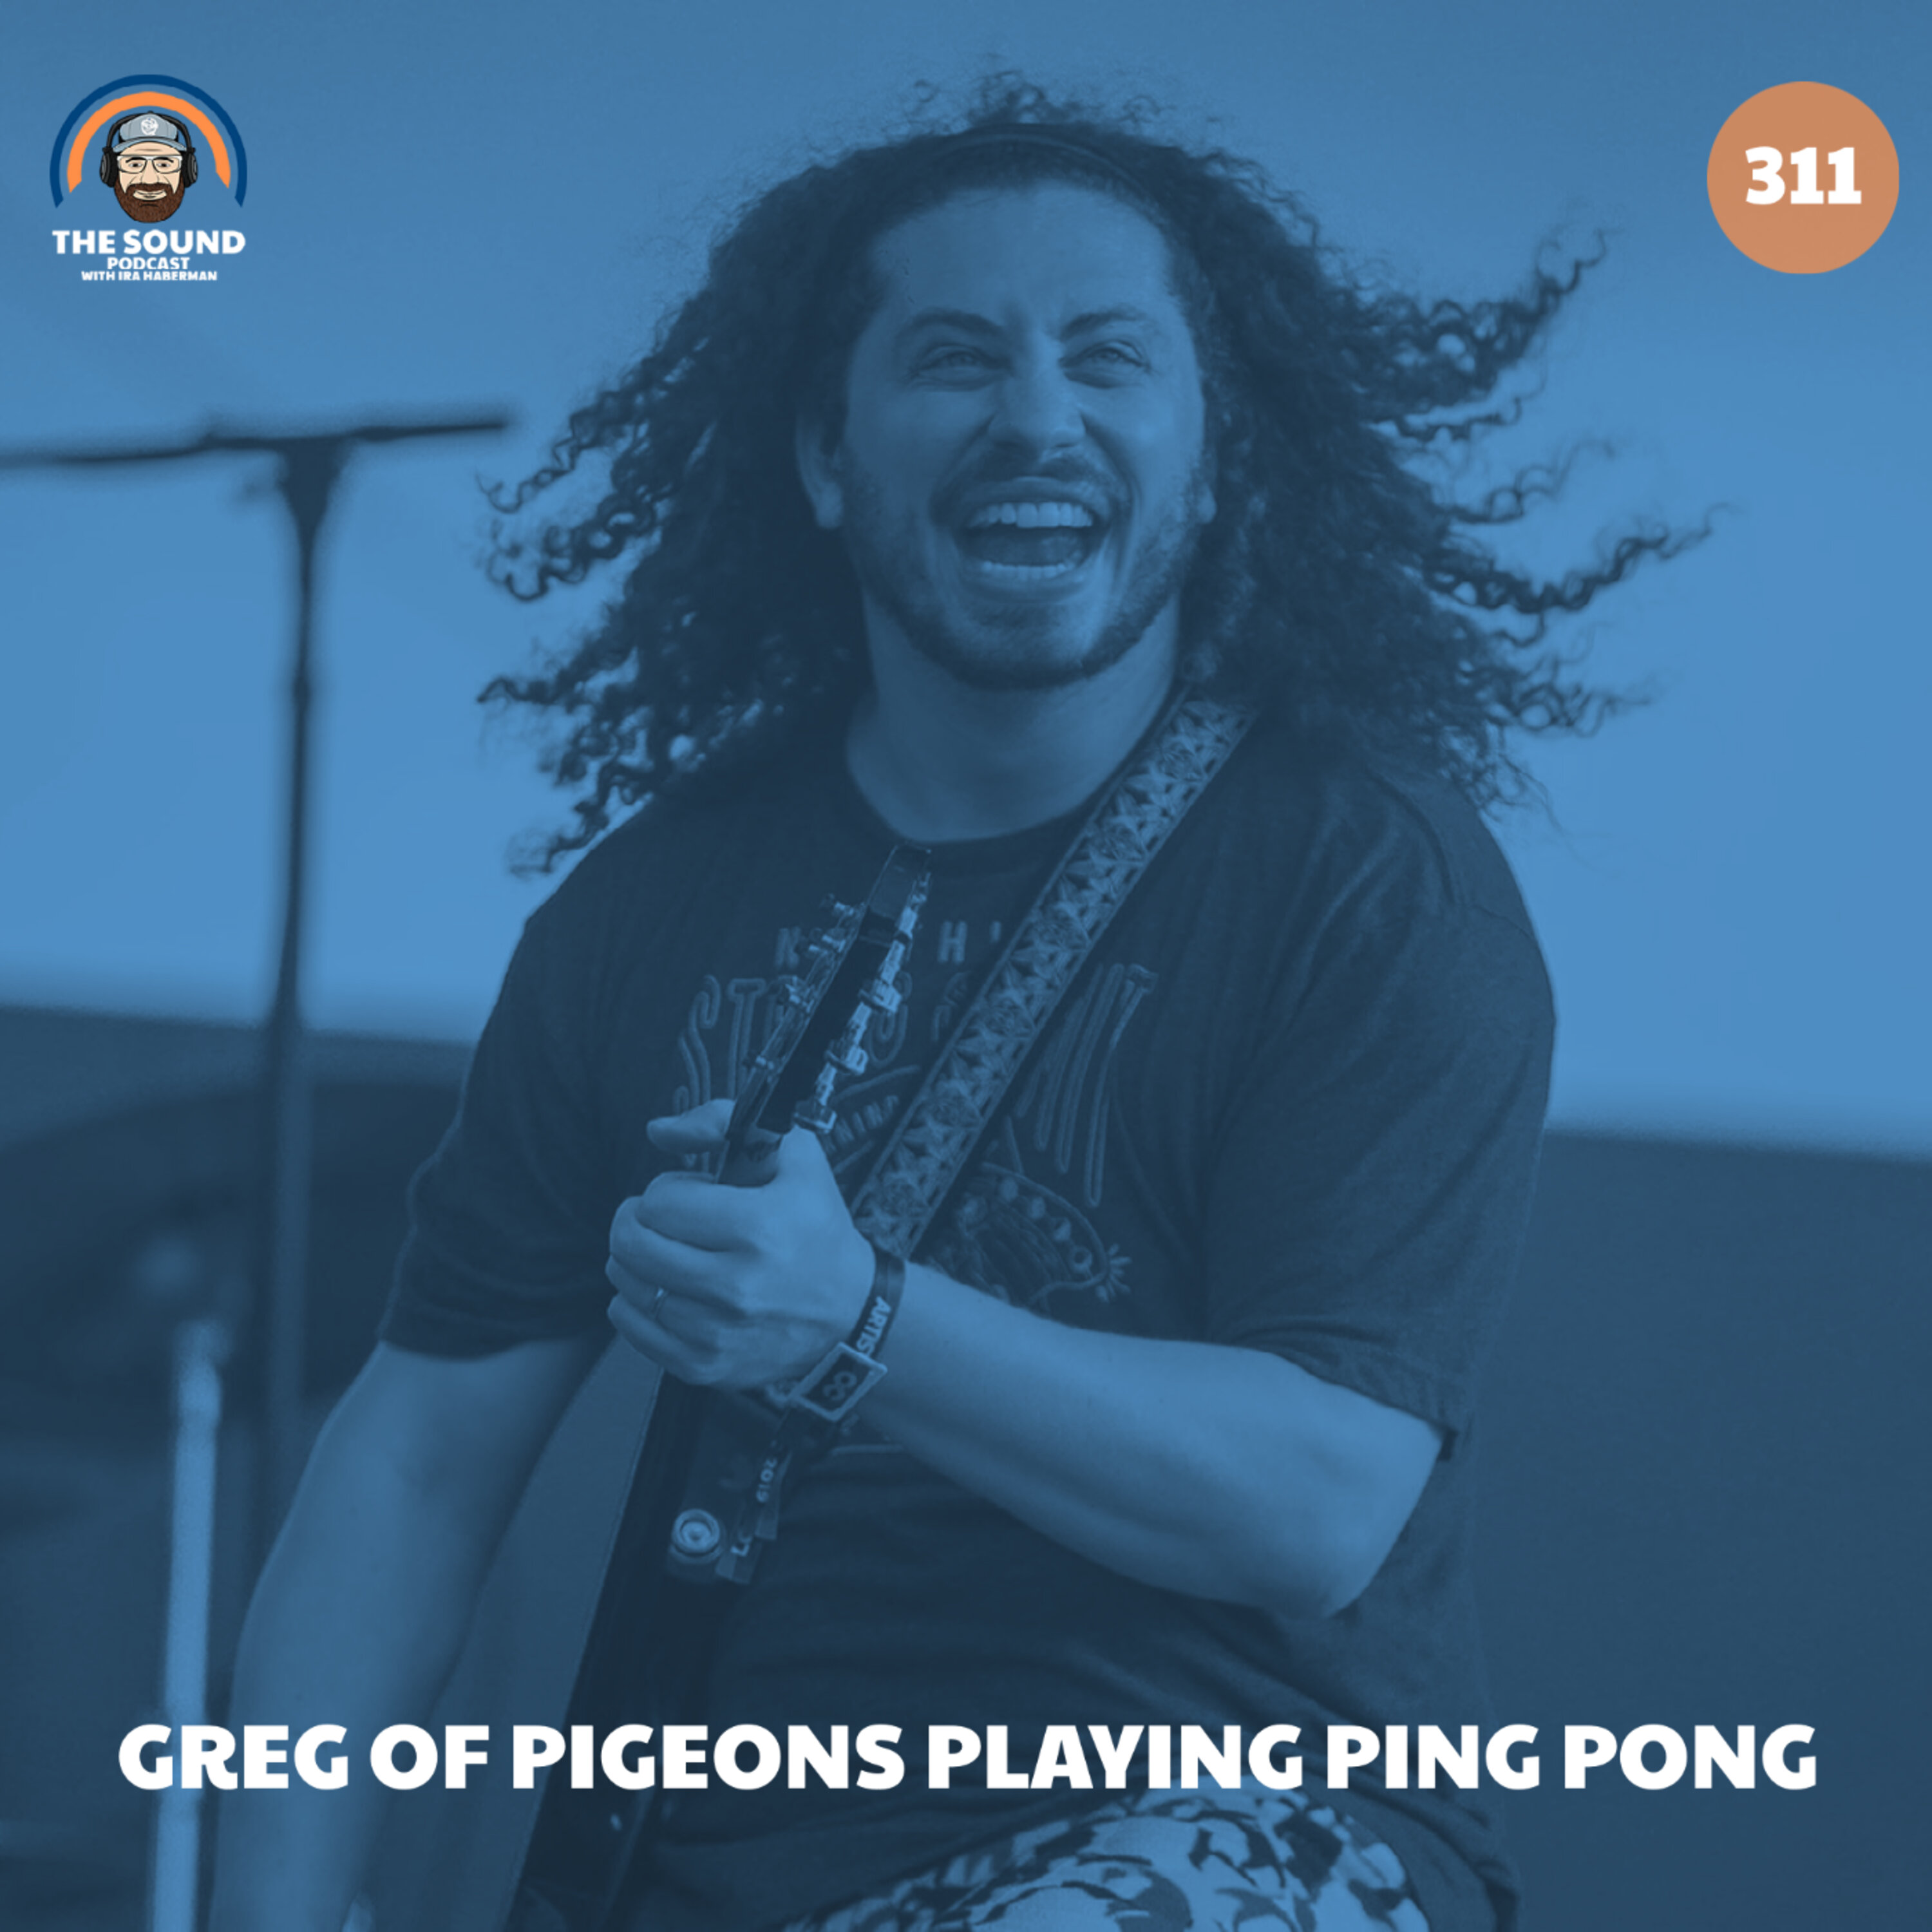 Greg of Pigeons Playing Ping Pong Image